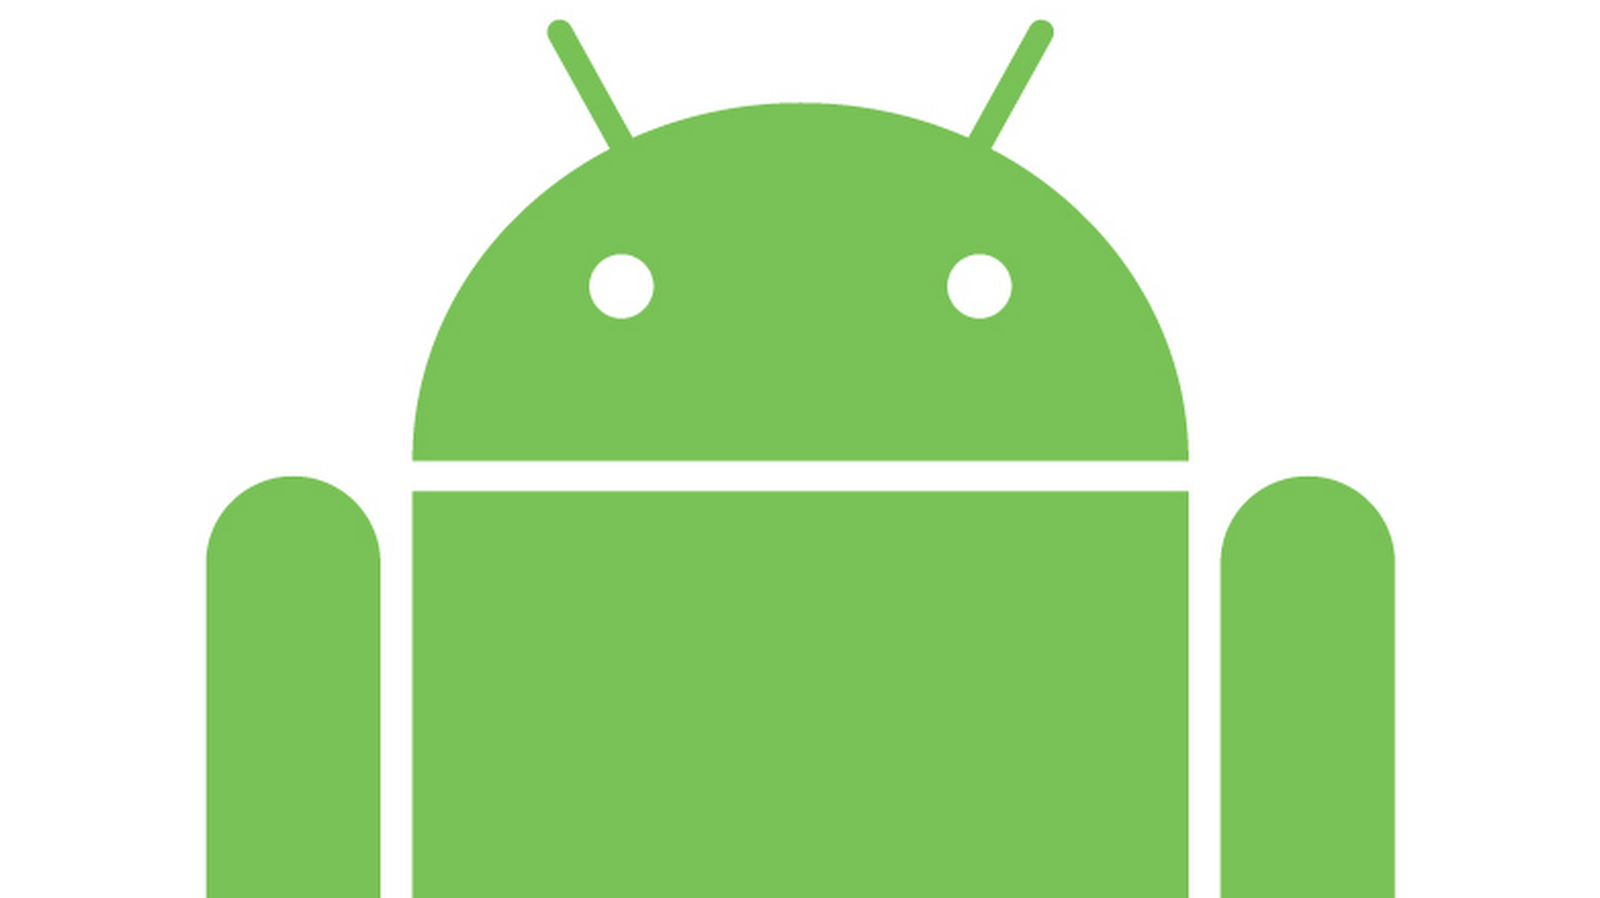 Android Apps aktualisieren sich nicht selbstständig